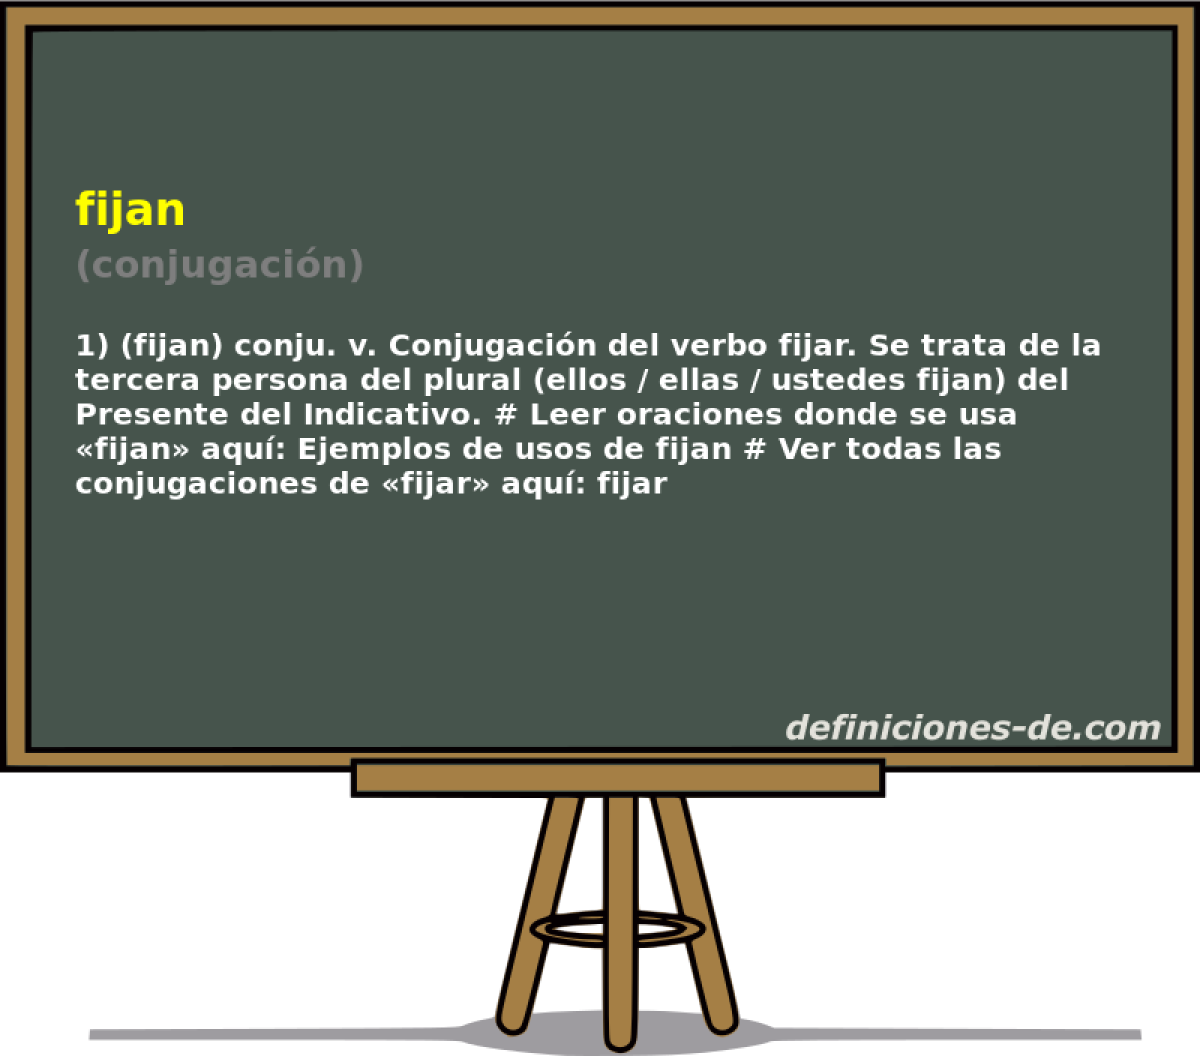 fijan (conjugacin)